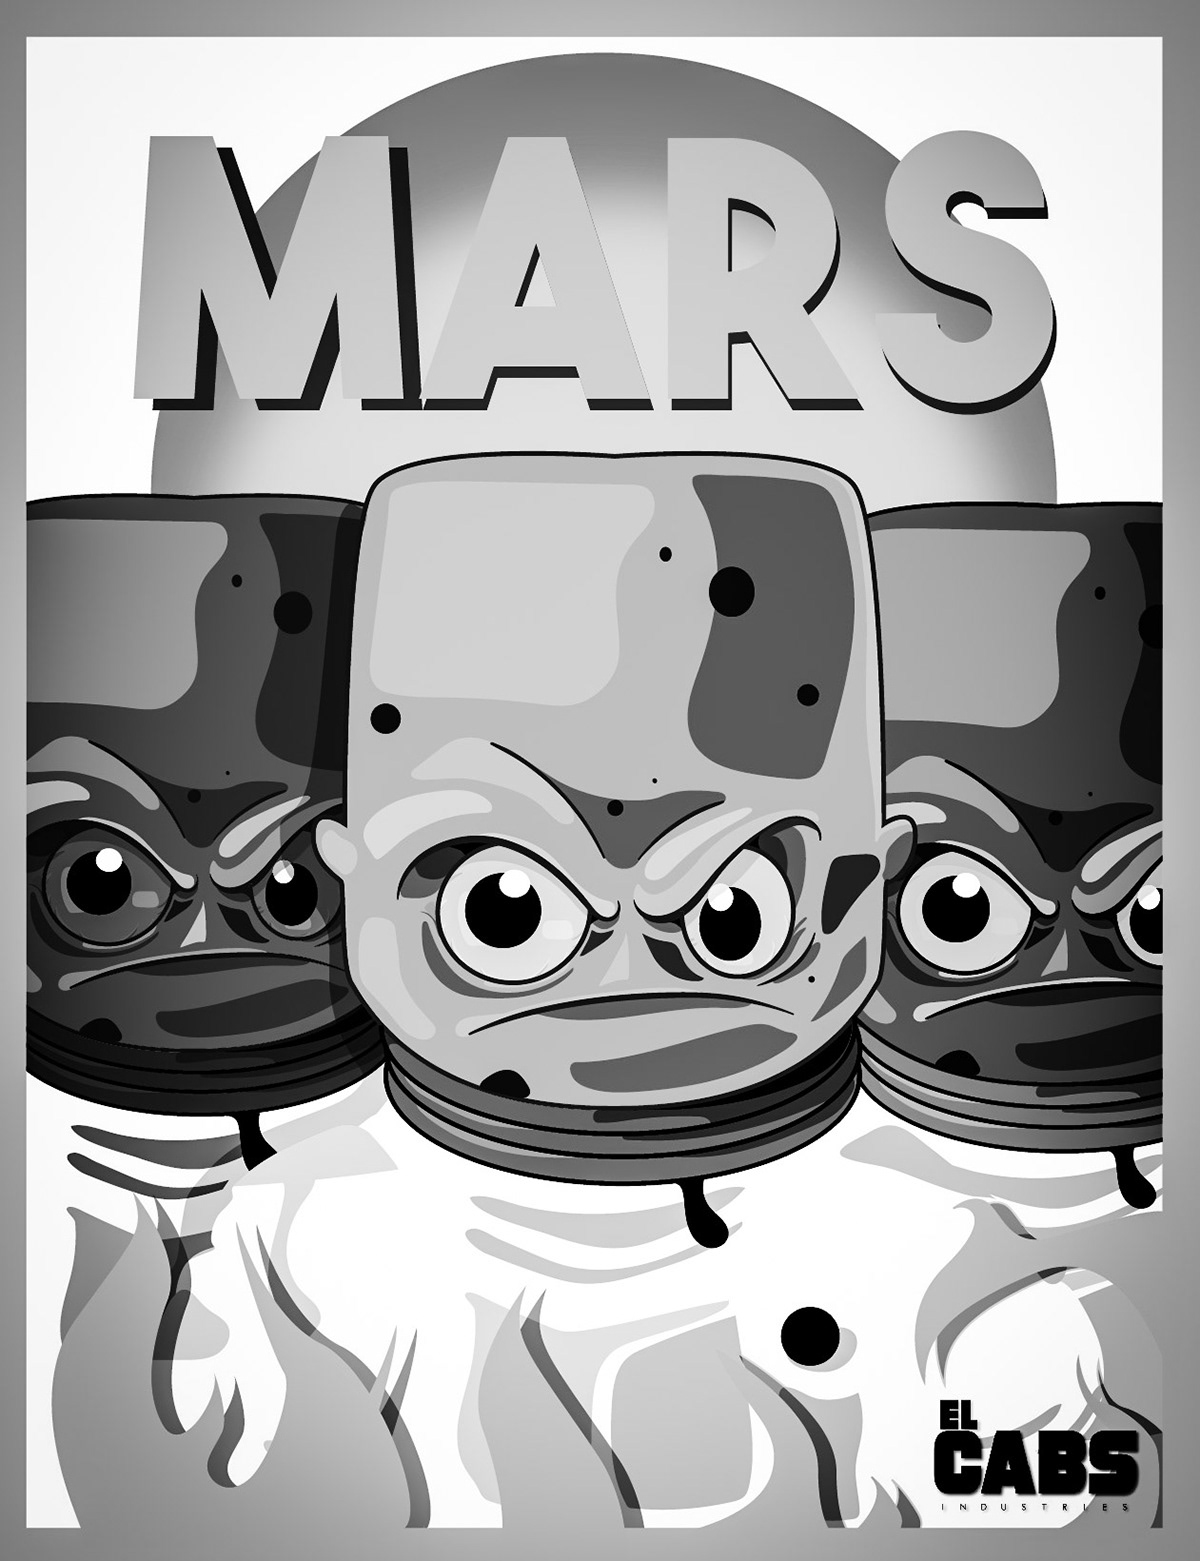 ovnis Extraterrestres color Marciano Marte ufologia cartoon ilustracion